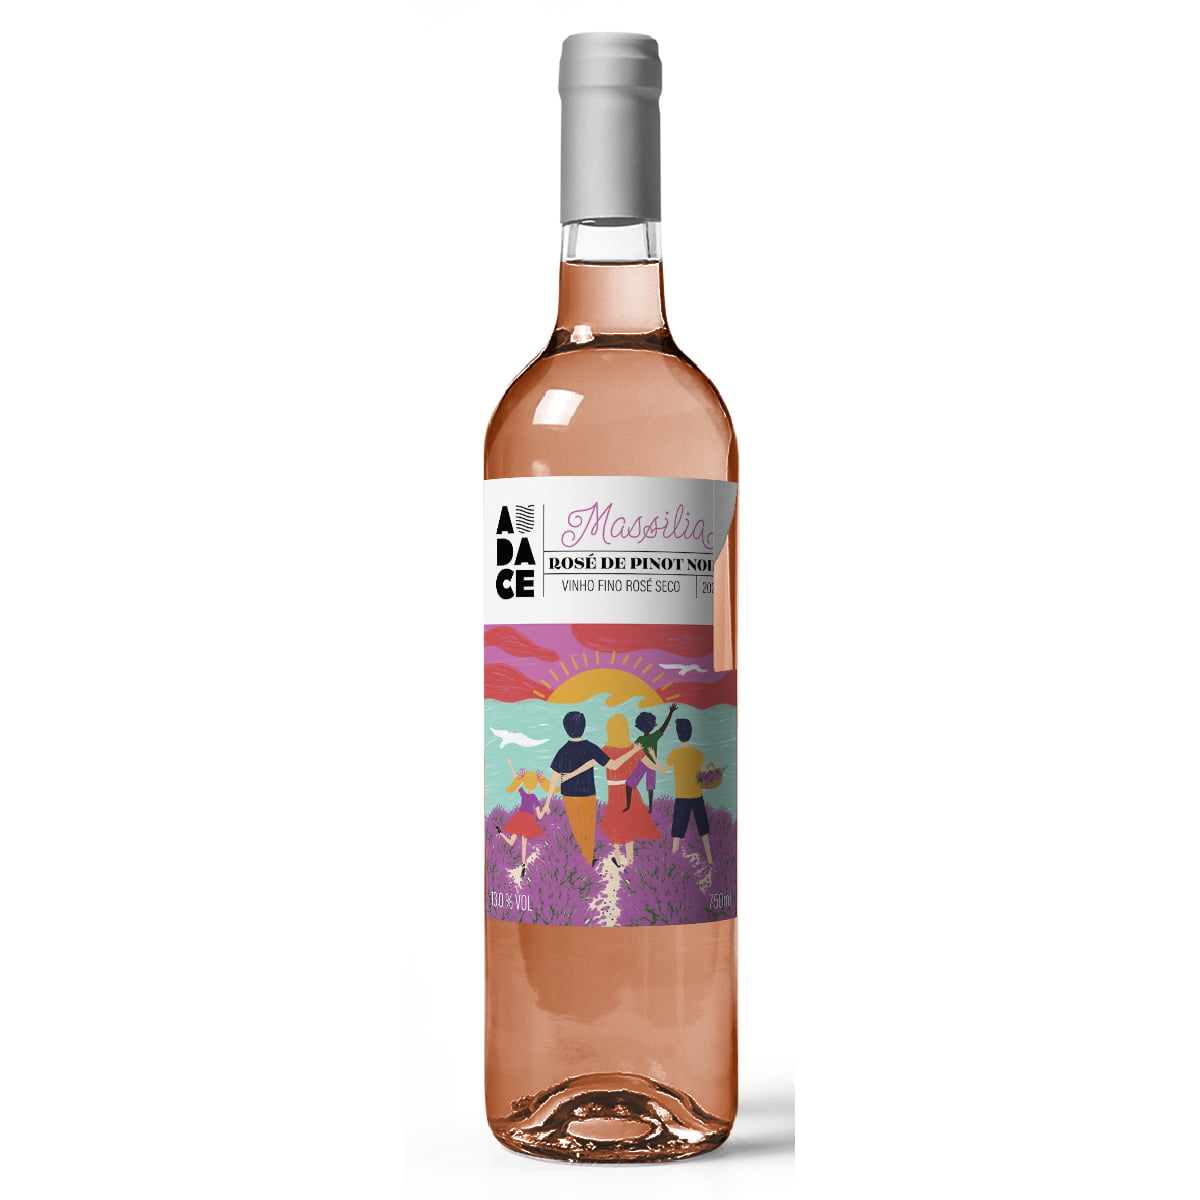 Vinho Audace Massilia Rosé de Pinot Seco 750ml